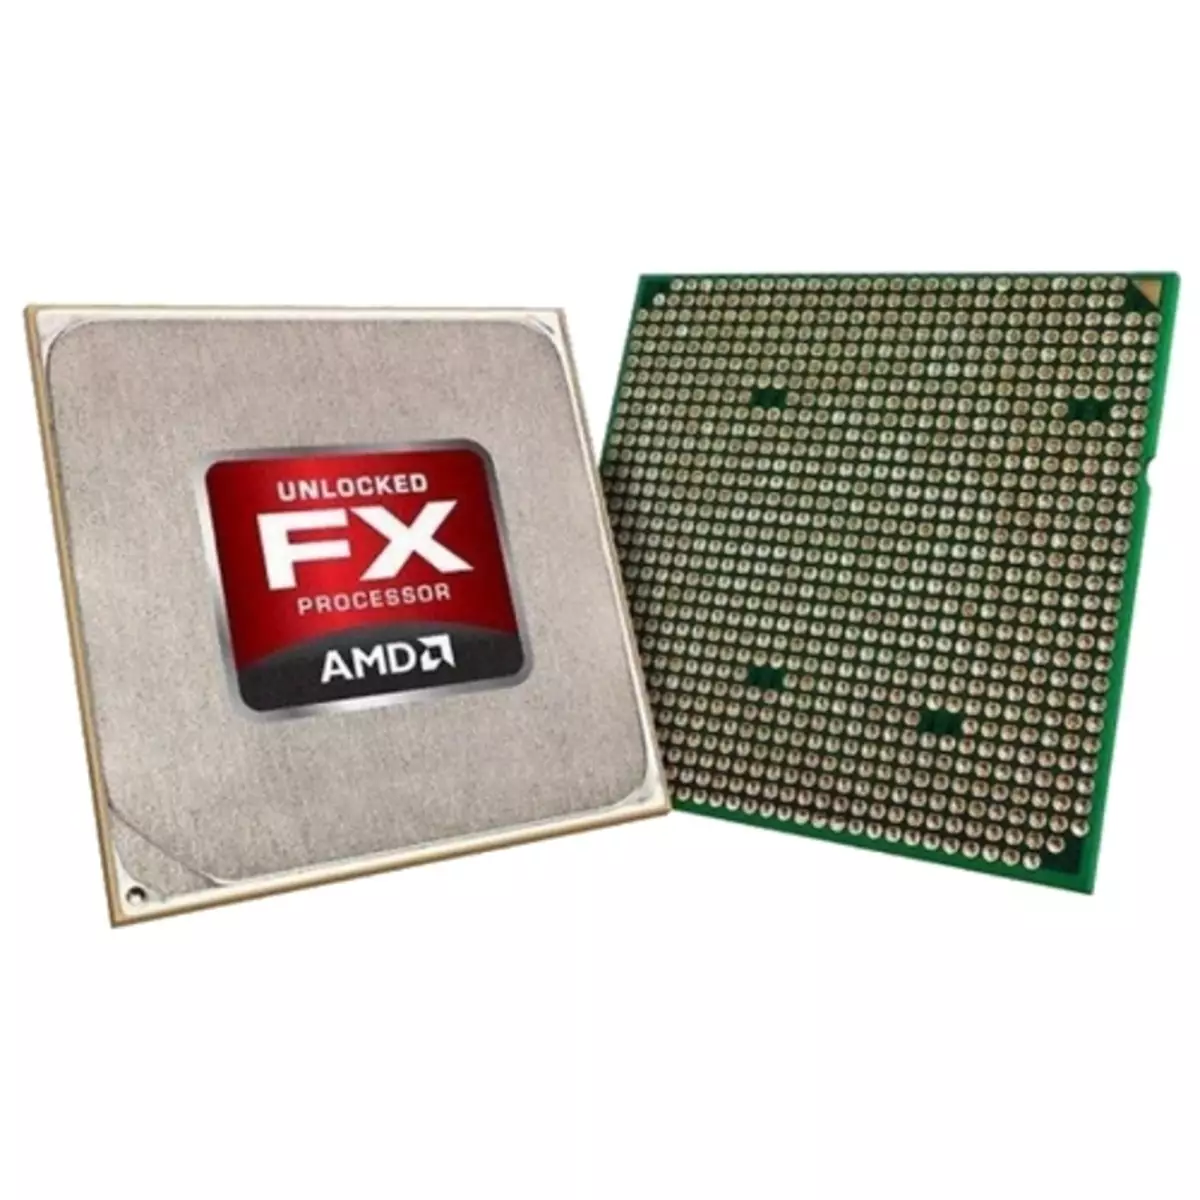 Utvendig AMD FX-prosessor